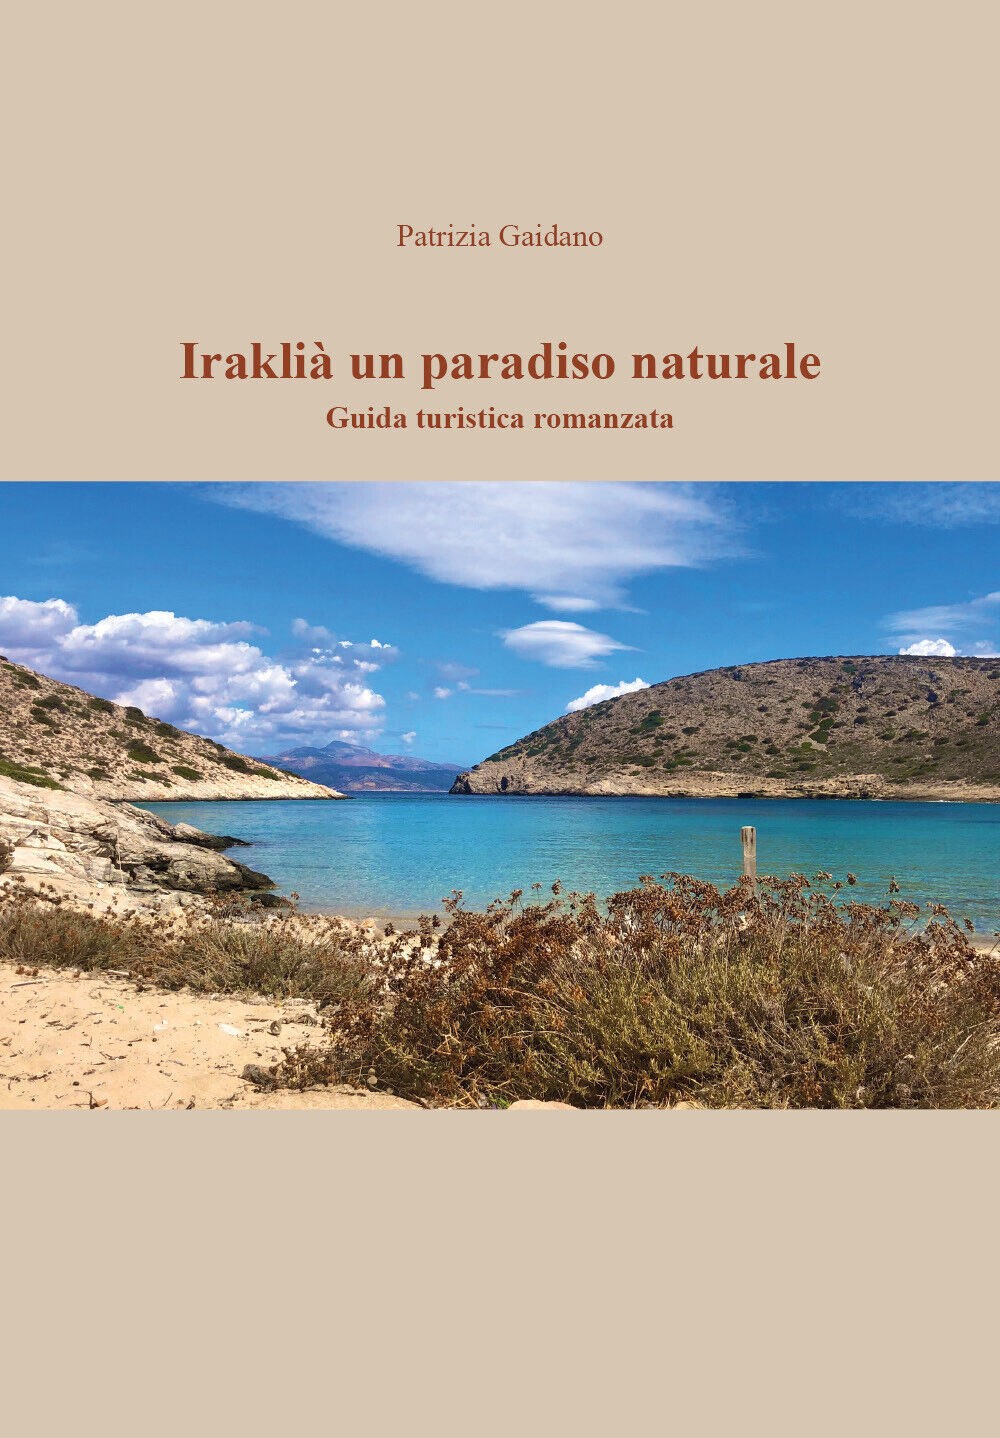 Irakli?, il Paradiso in un?isola di Patrizia Gaidano, 2020, Youcanprint